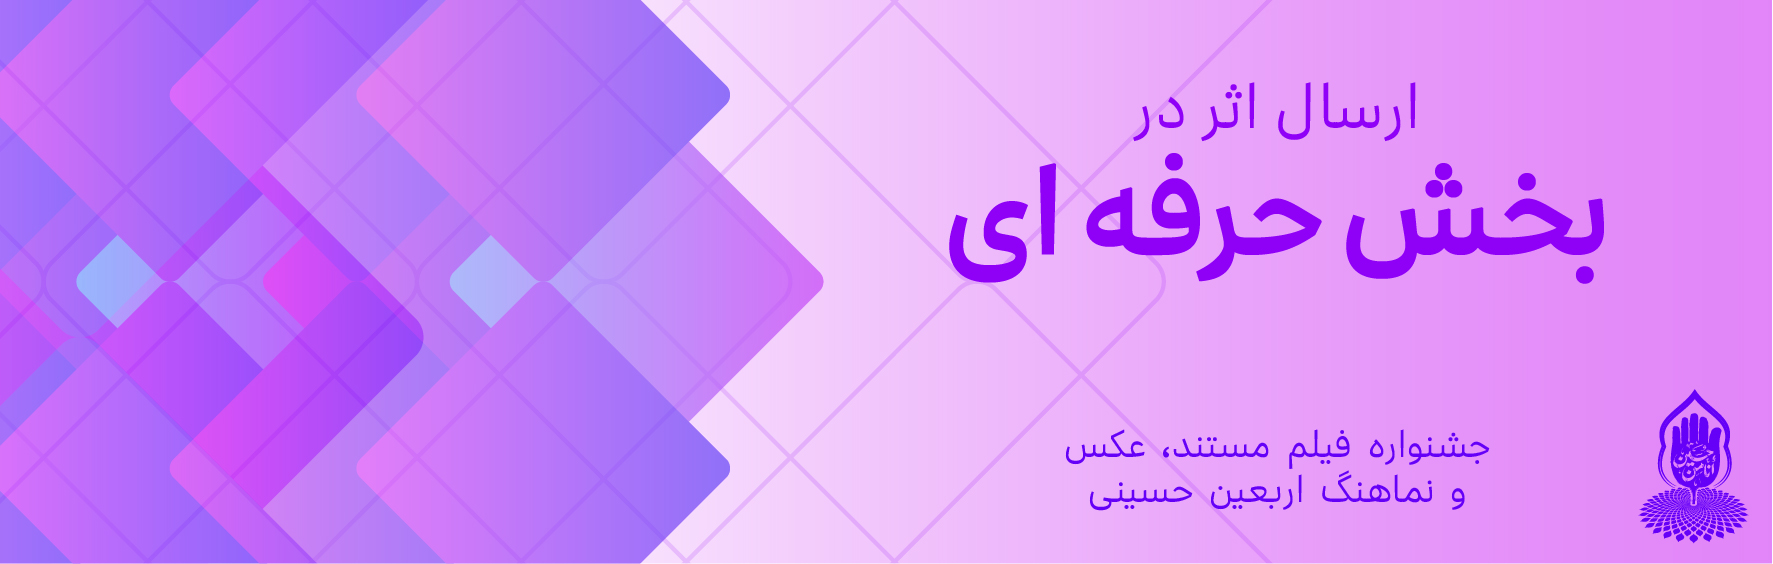 فراخوان اولین جایزه بزرگ فیلم مستند و عکس استان اصفهان